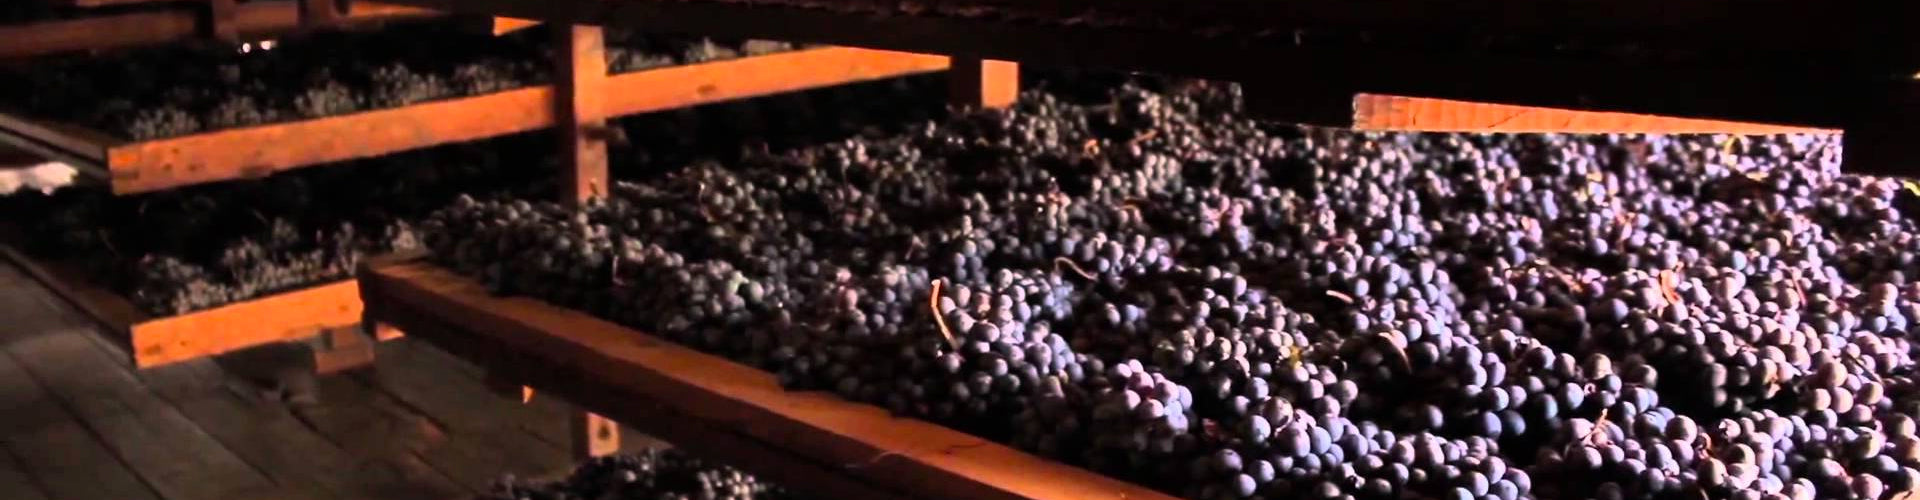 Corvina grapes drying in Bertani Cellar